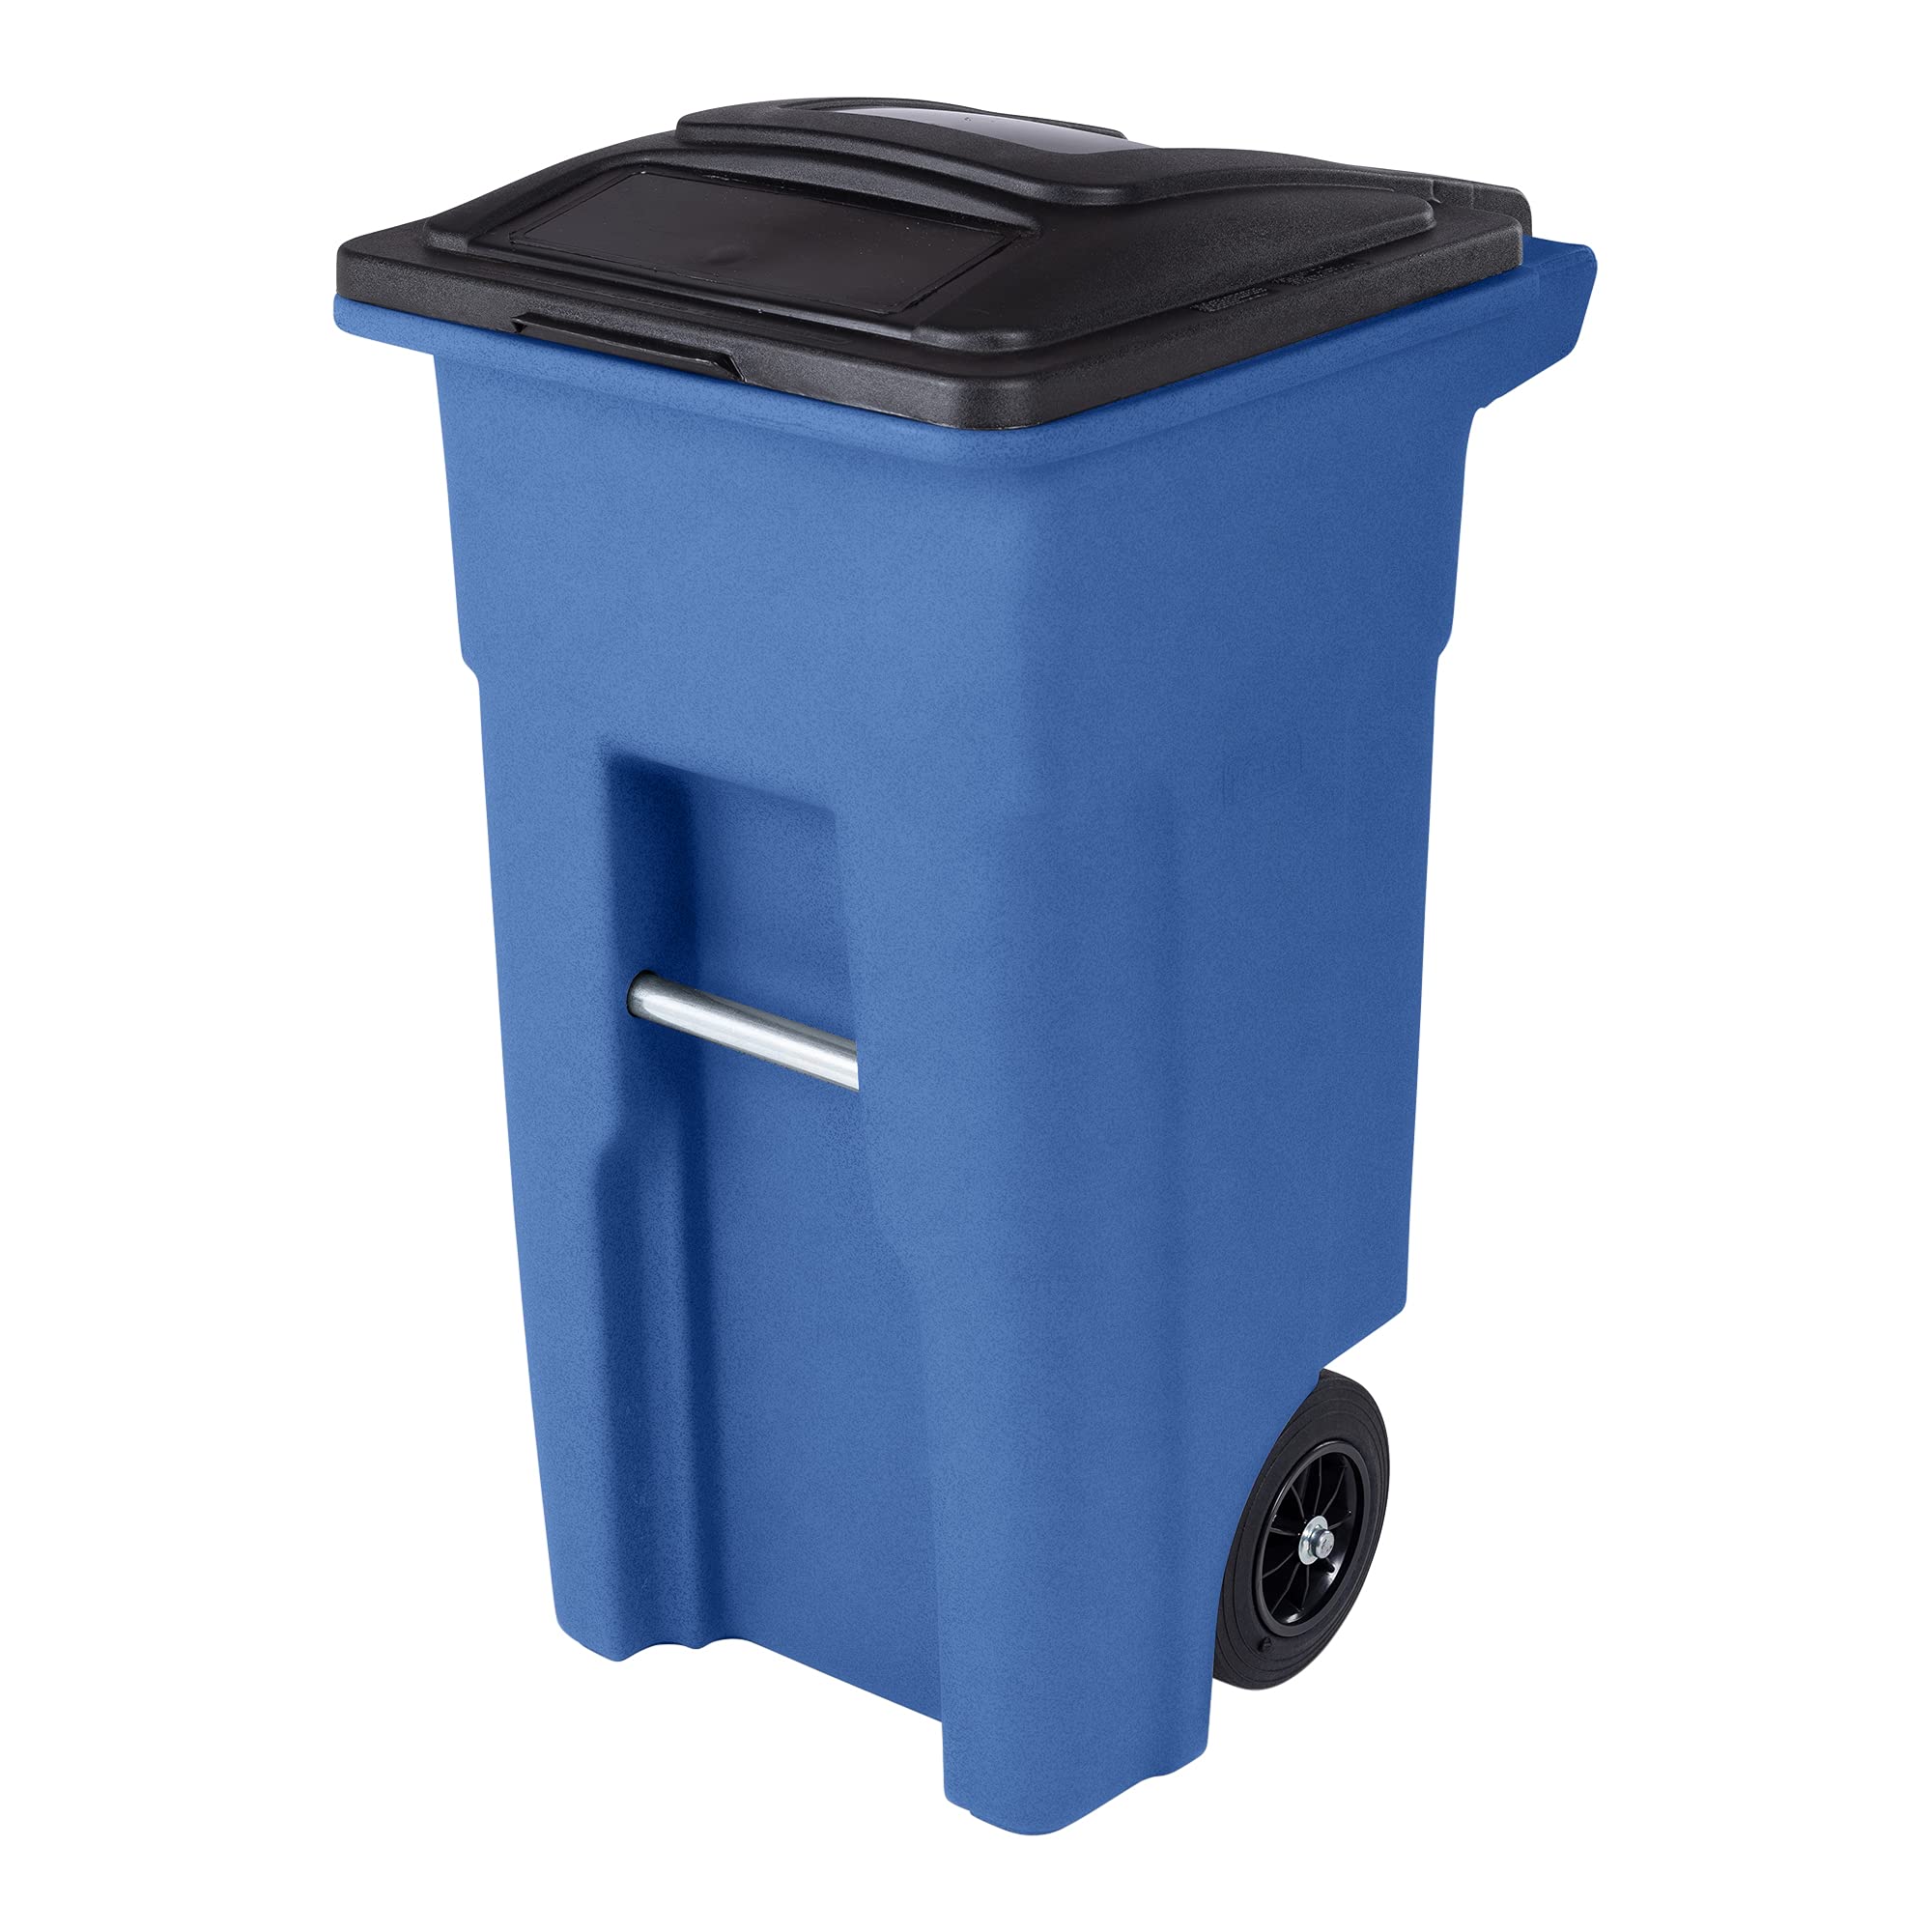 Toter 32 Gal. Lata de lixo azul com rodas silenciosas e tampa preta anexada